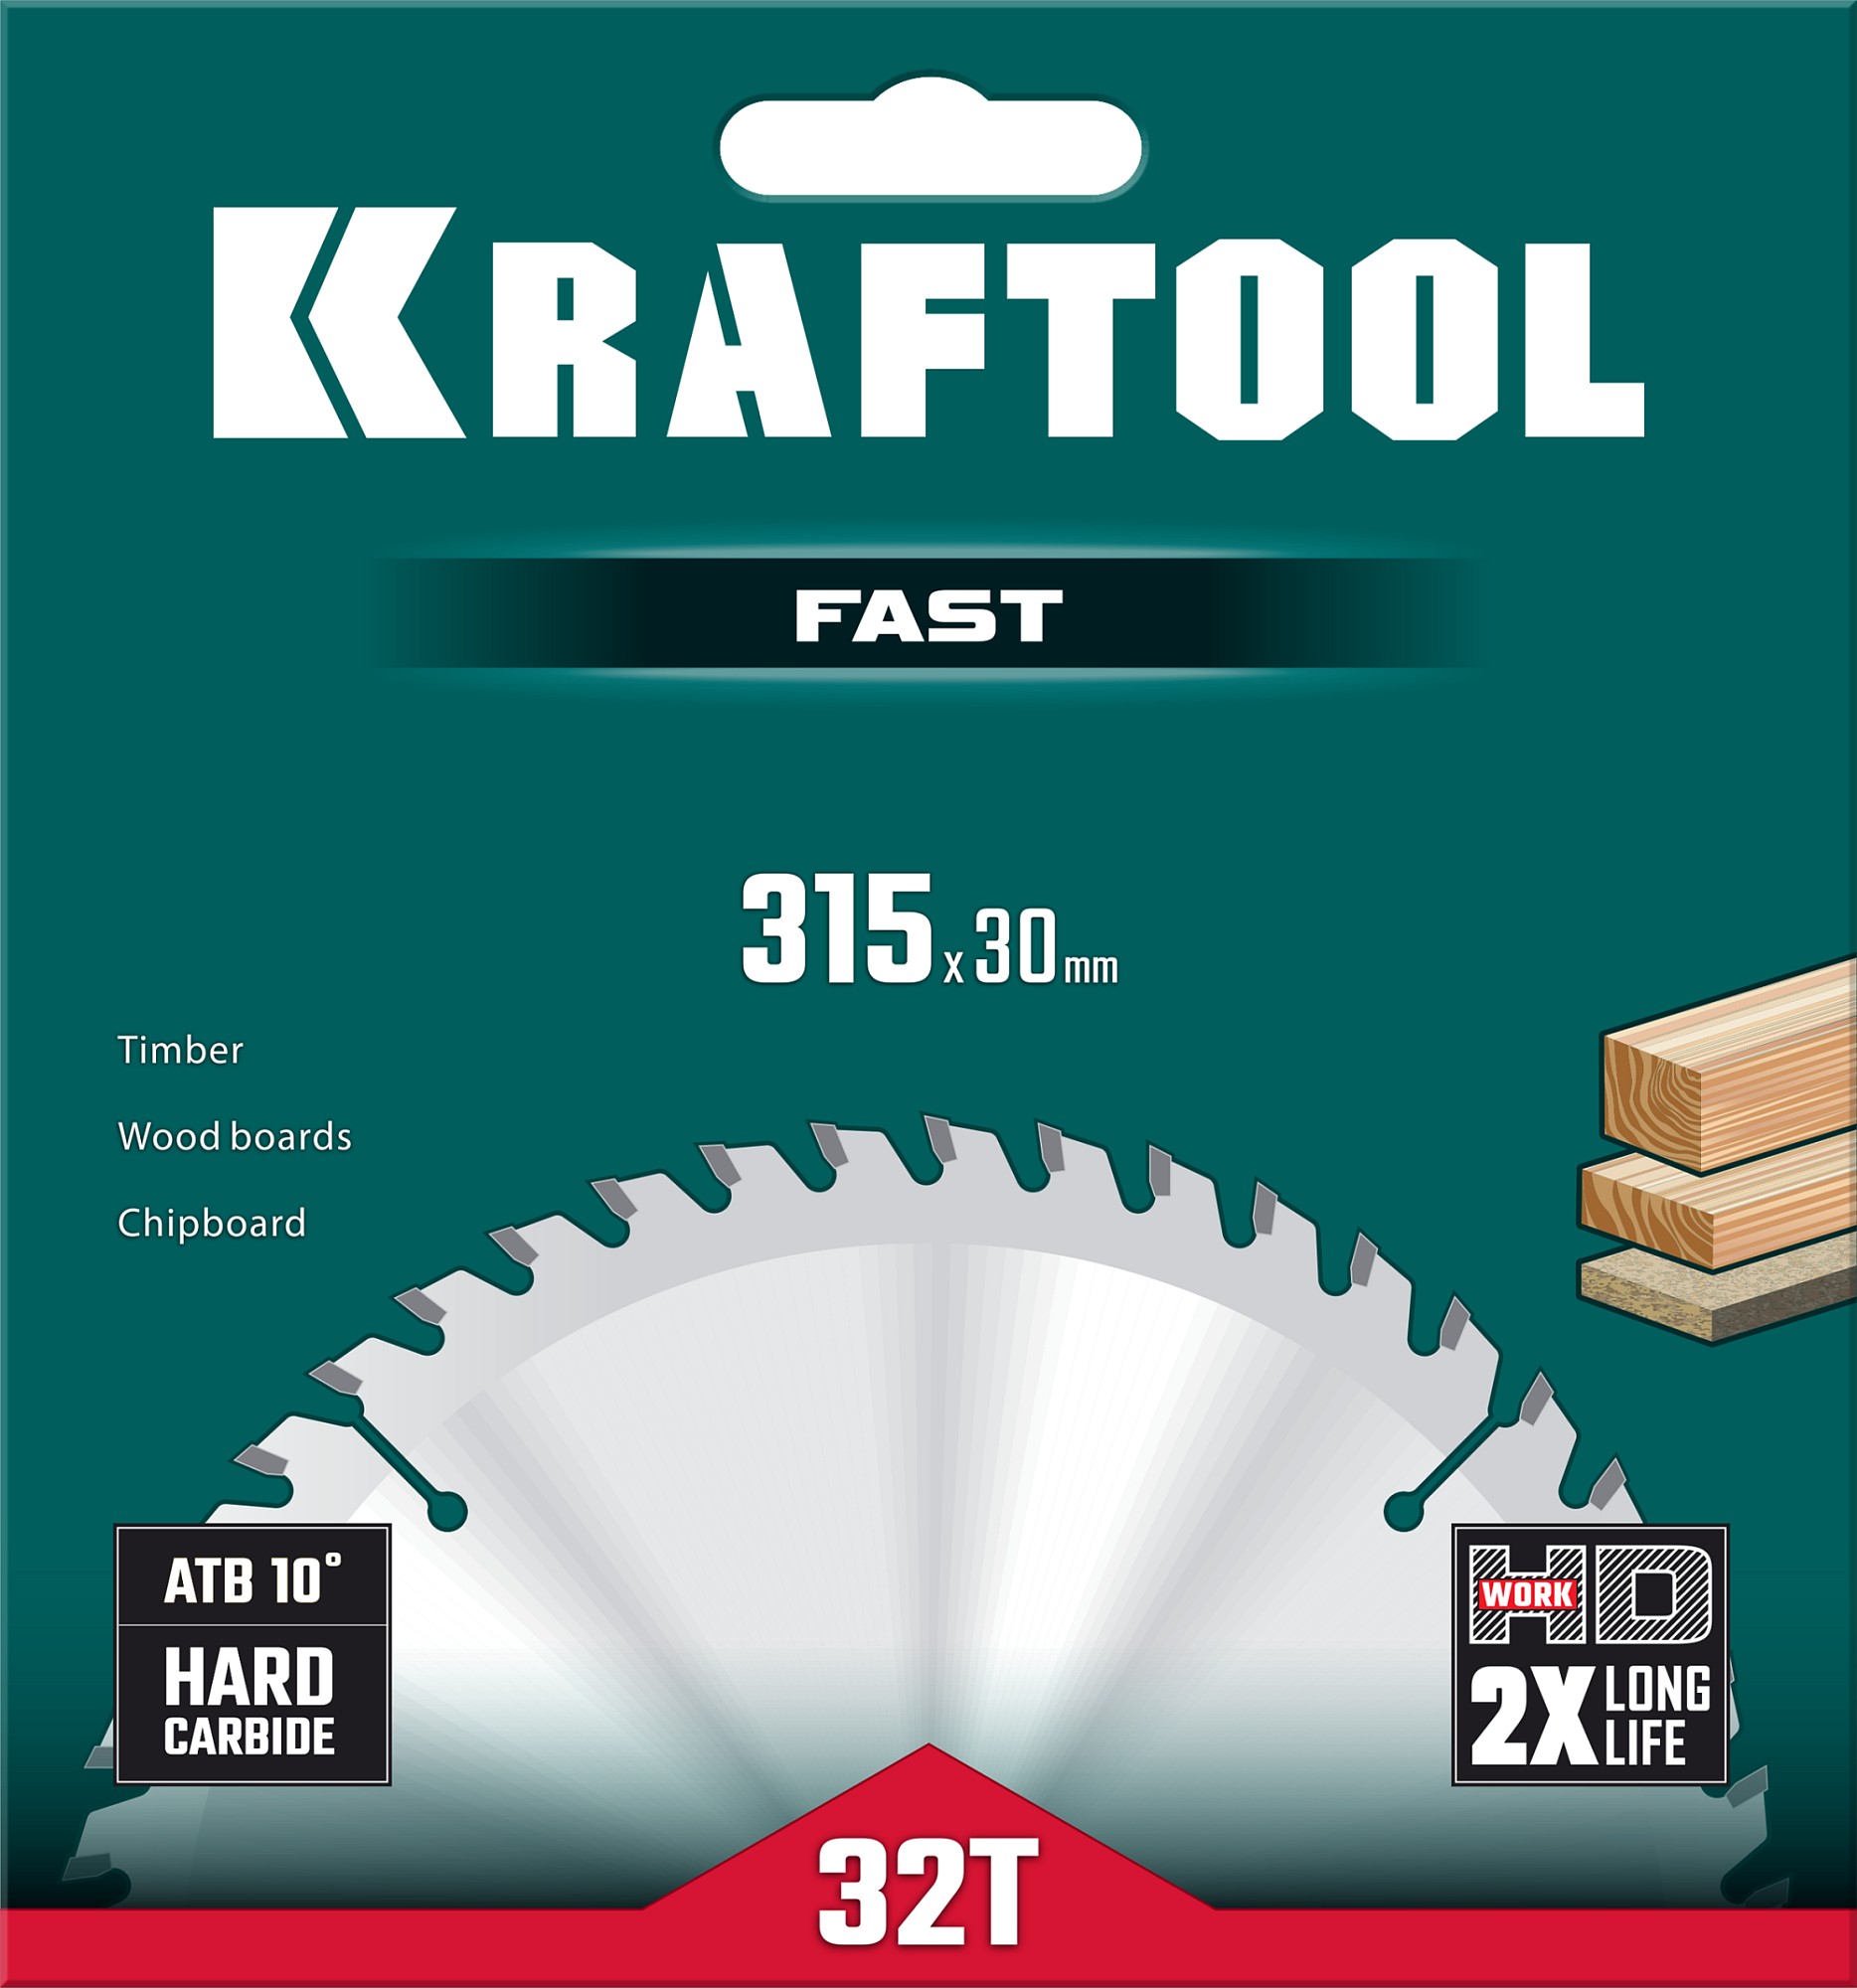 KRAFTOOL Fast, 315 х 30 мм, 32Т, пильный диск по дереву (36950-315-30)